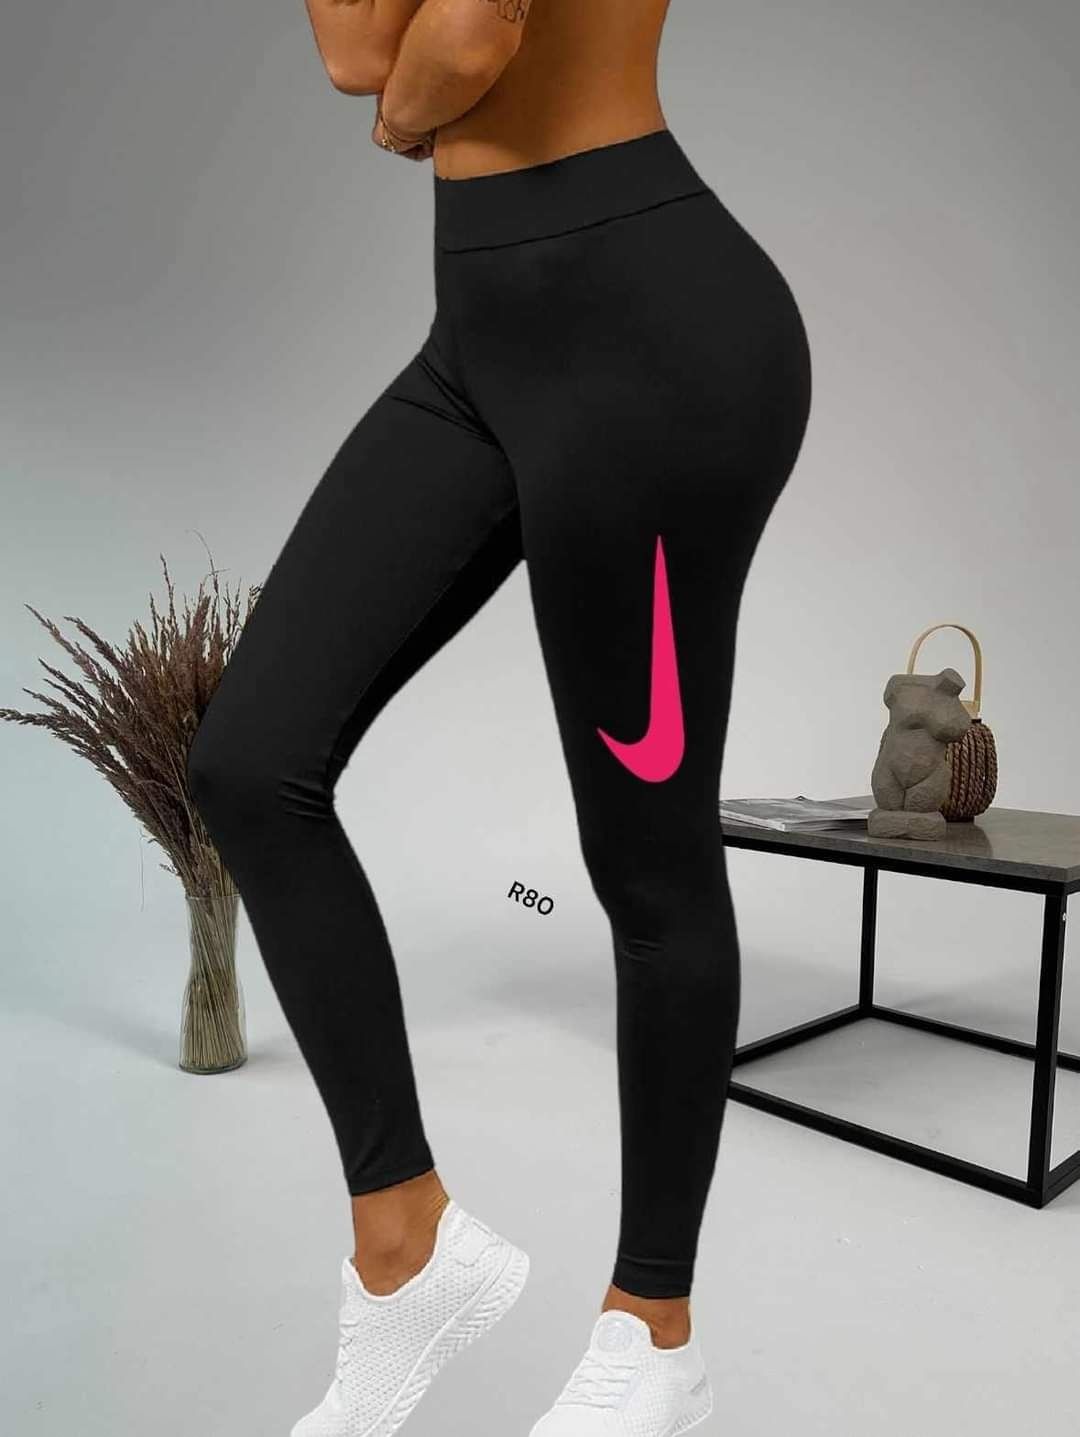 Nike Leginsy damskie S M L XL